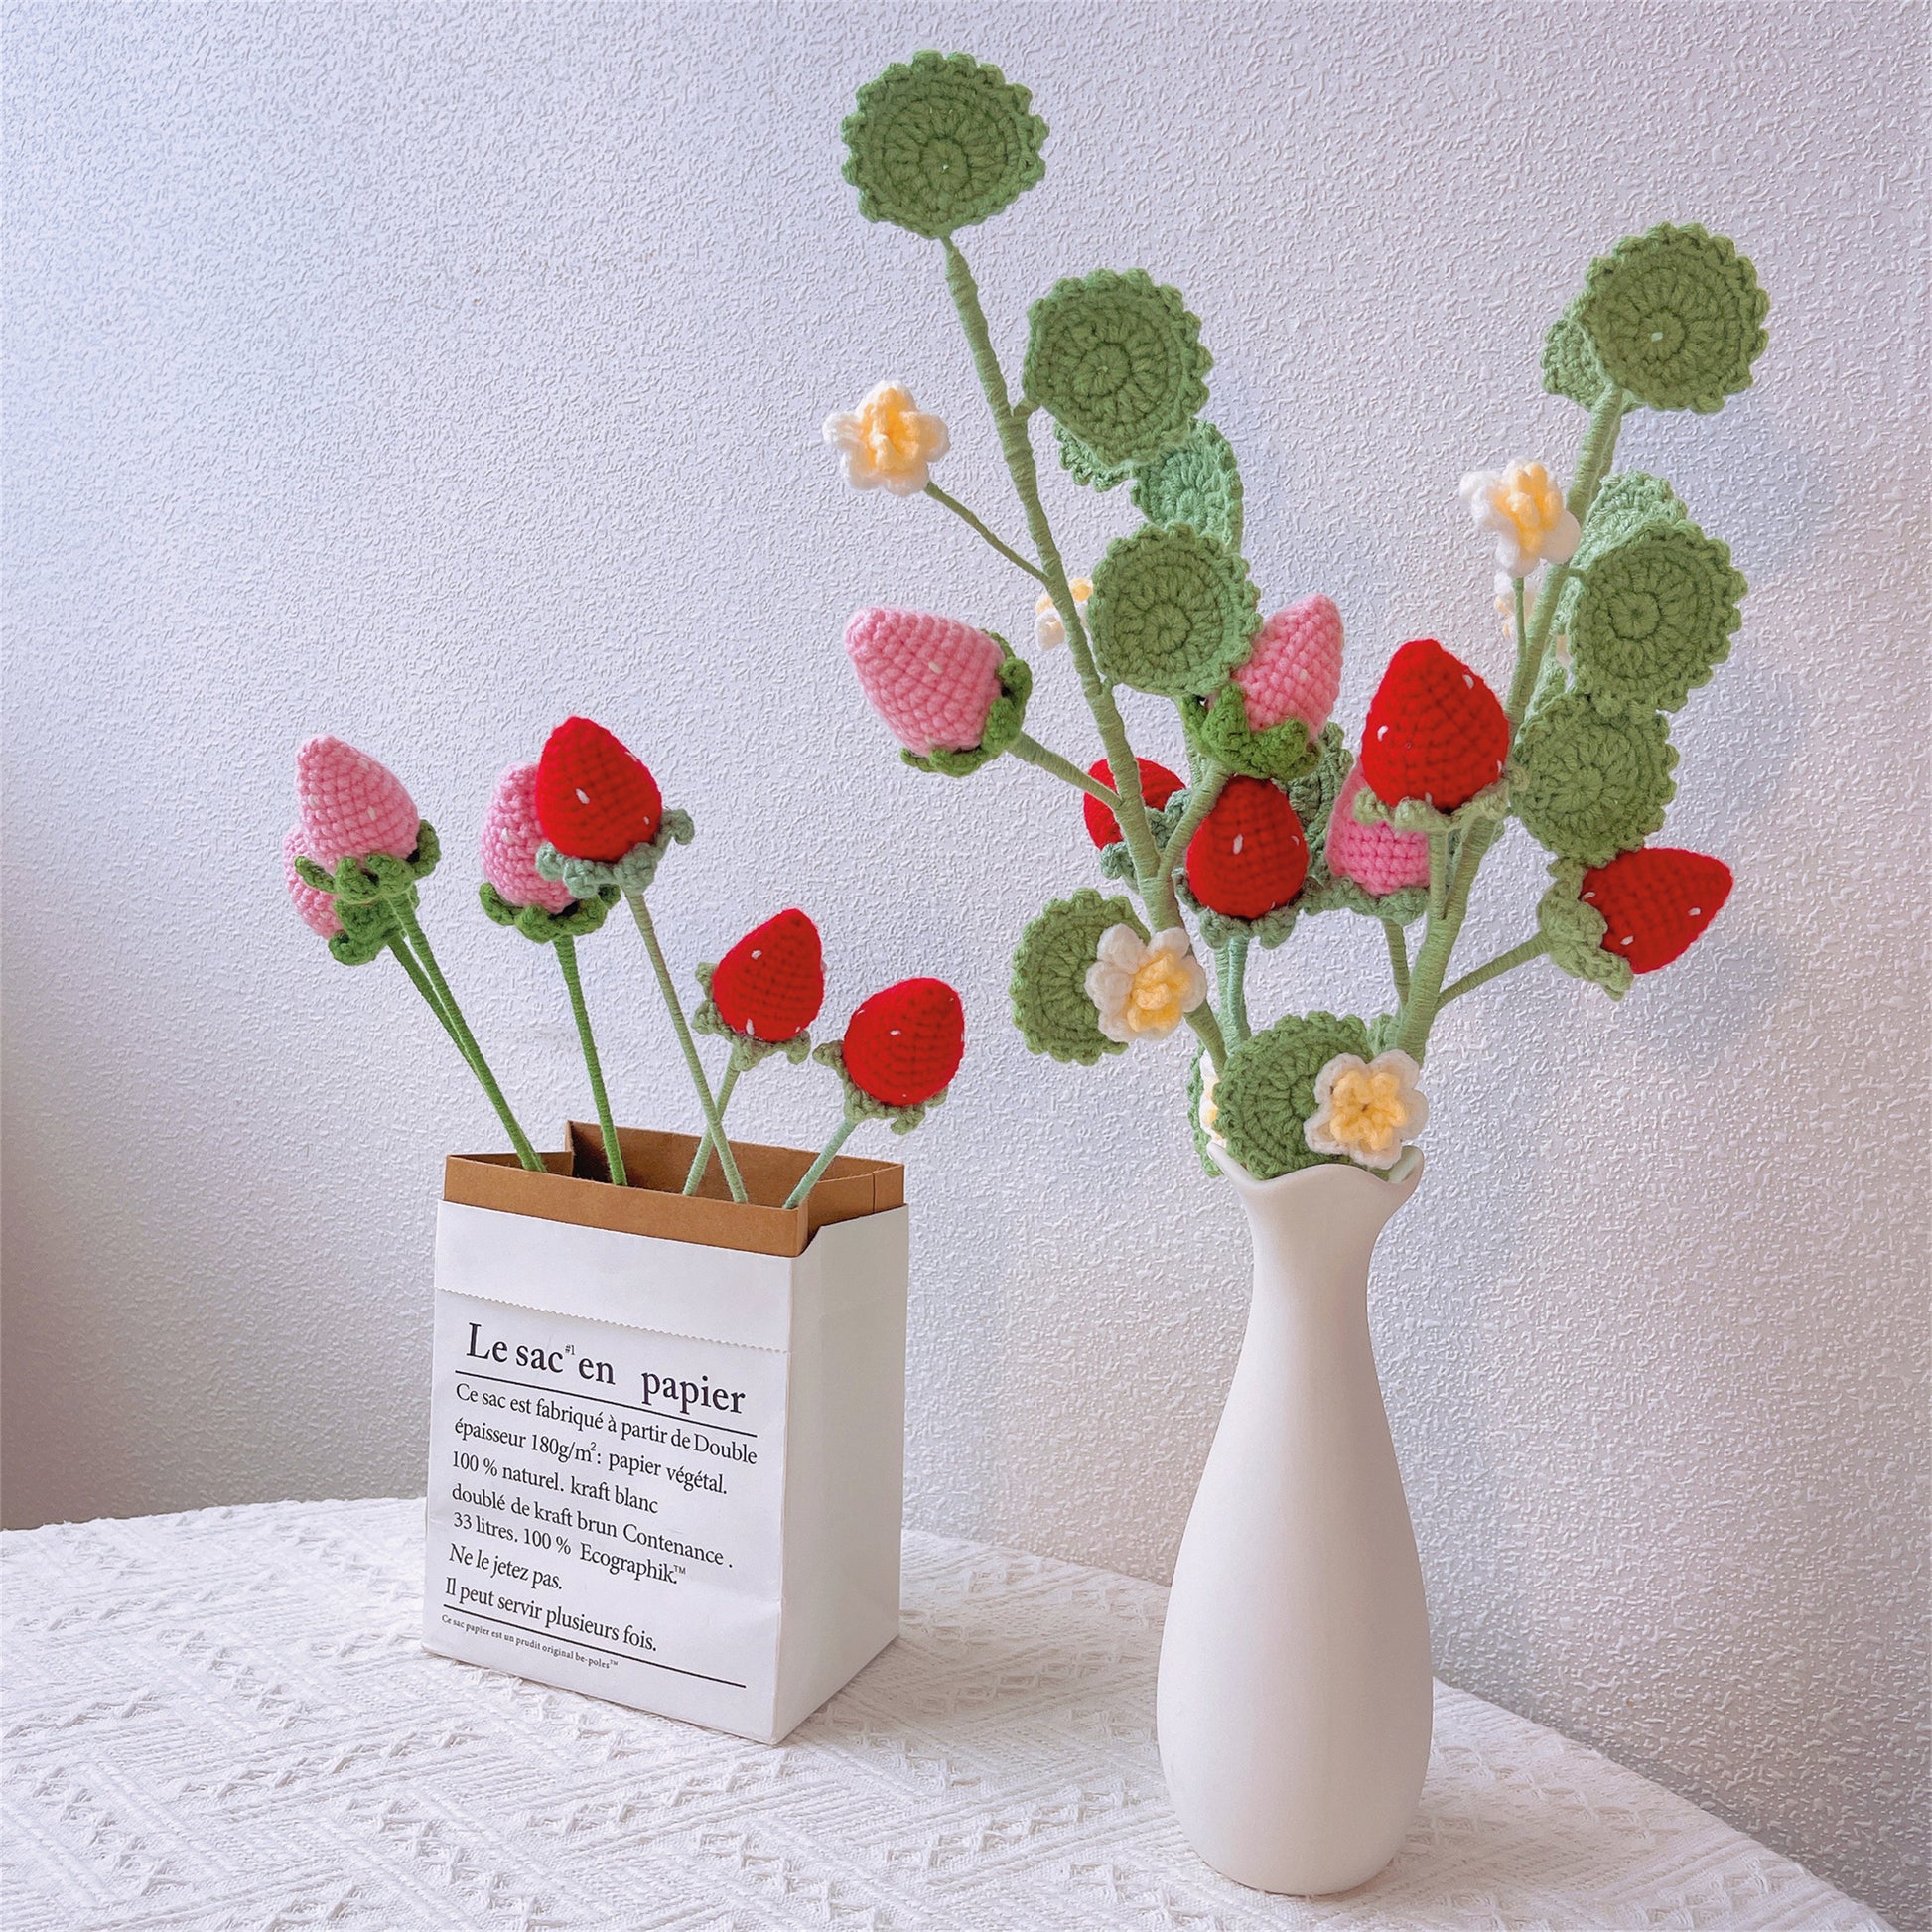 Handgefertigte Erdbeer-Häkeltopfpflanze – süße Heimdekoration